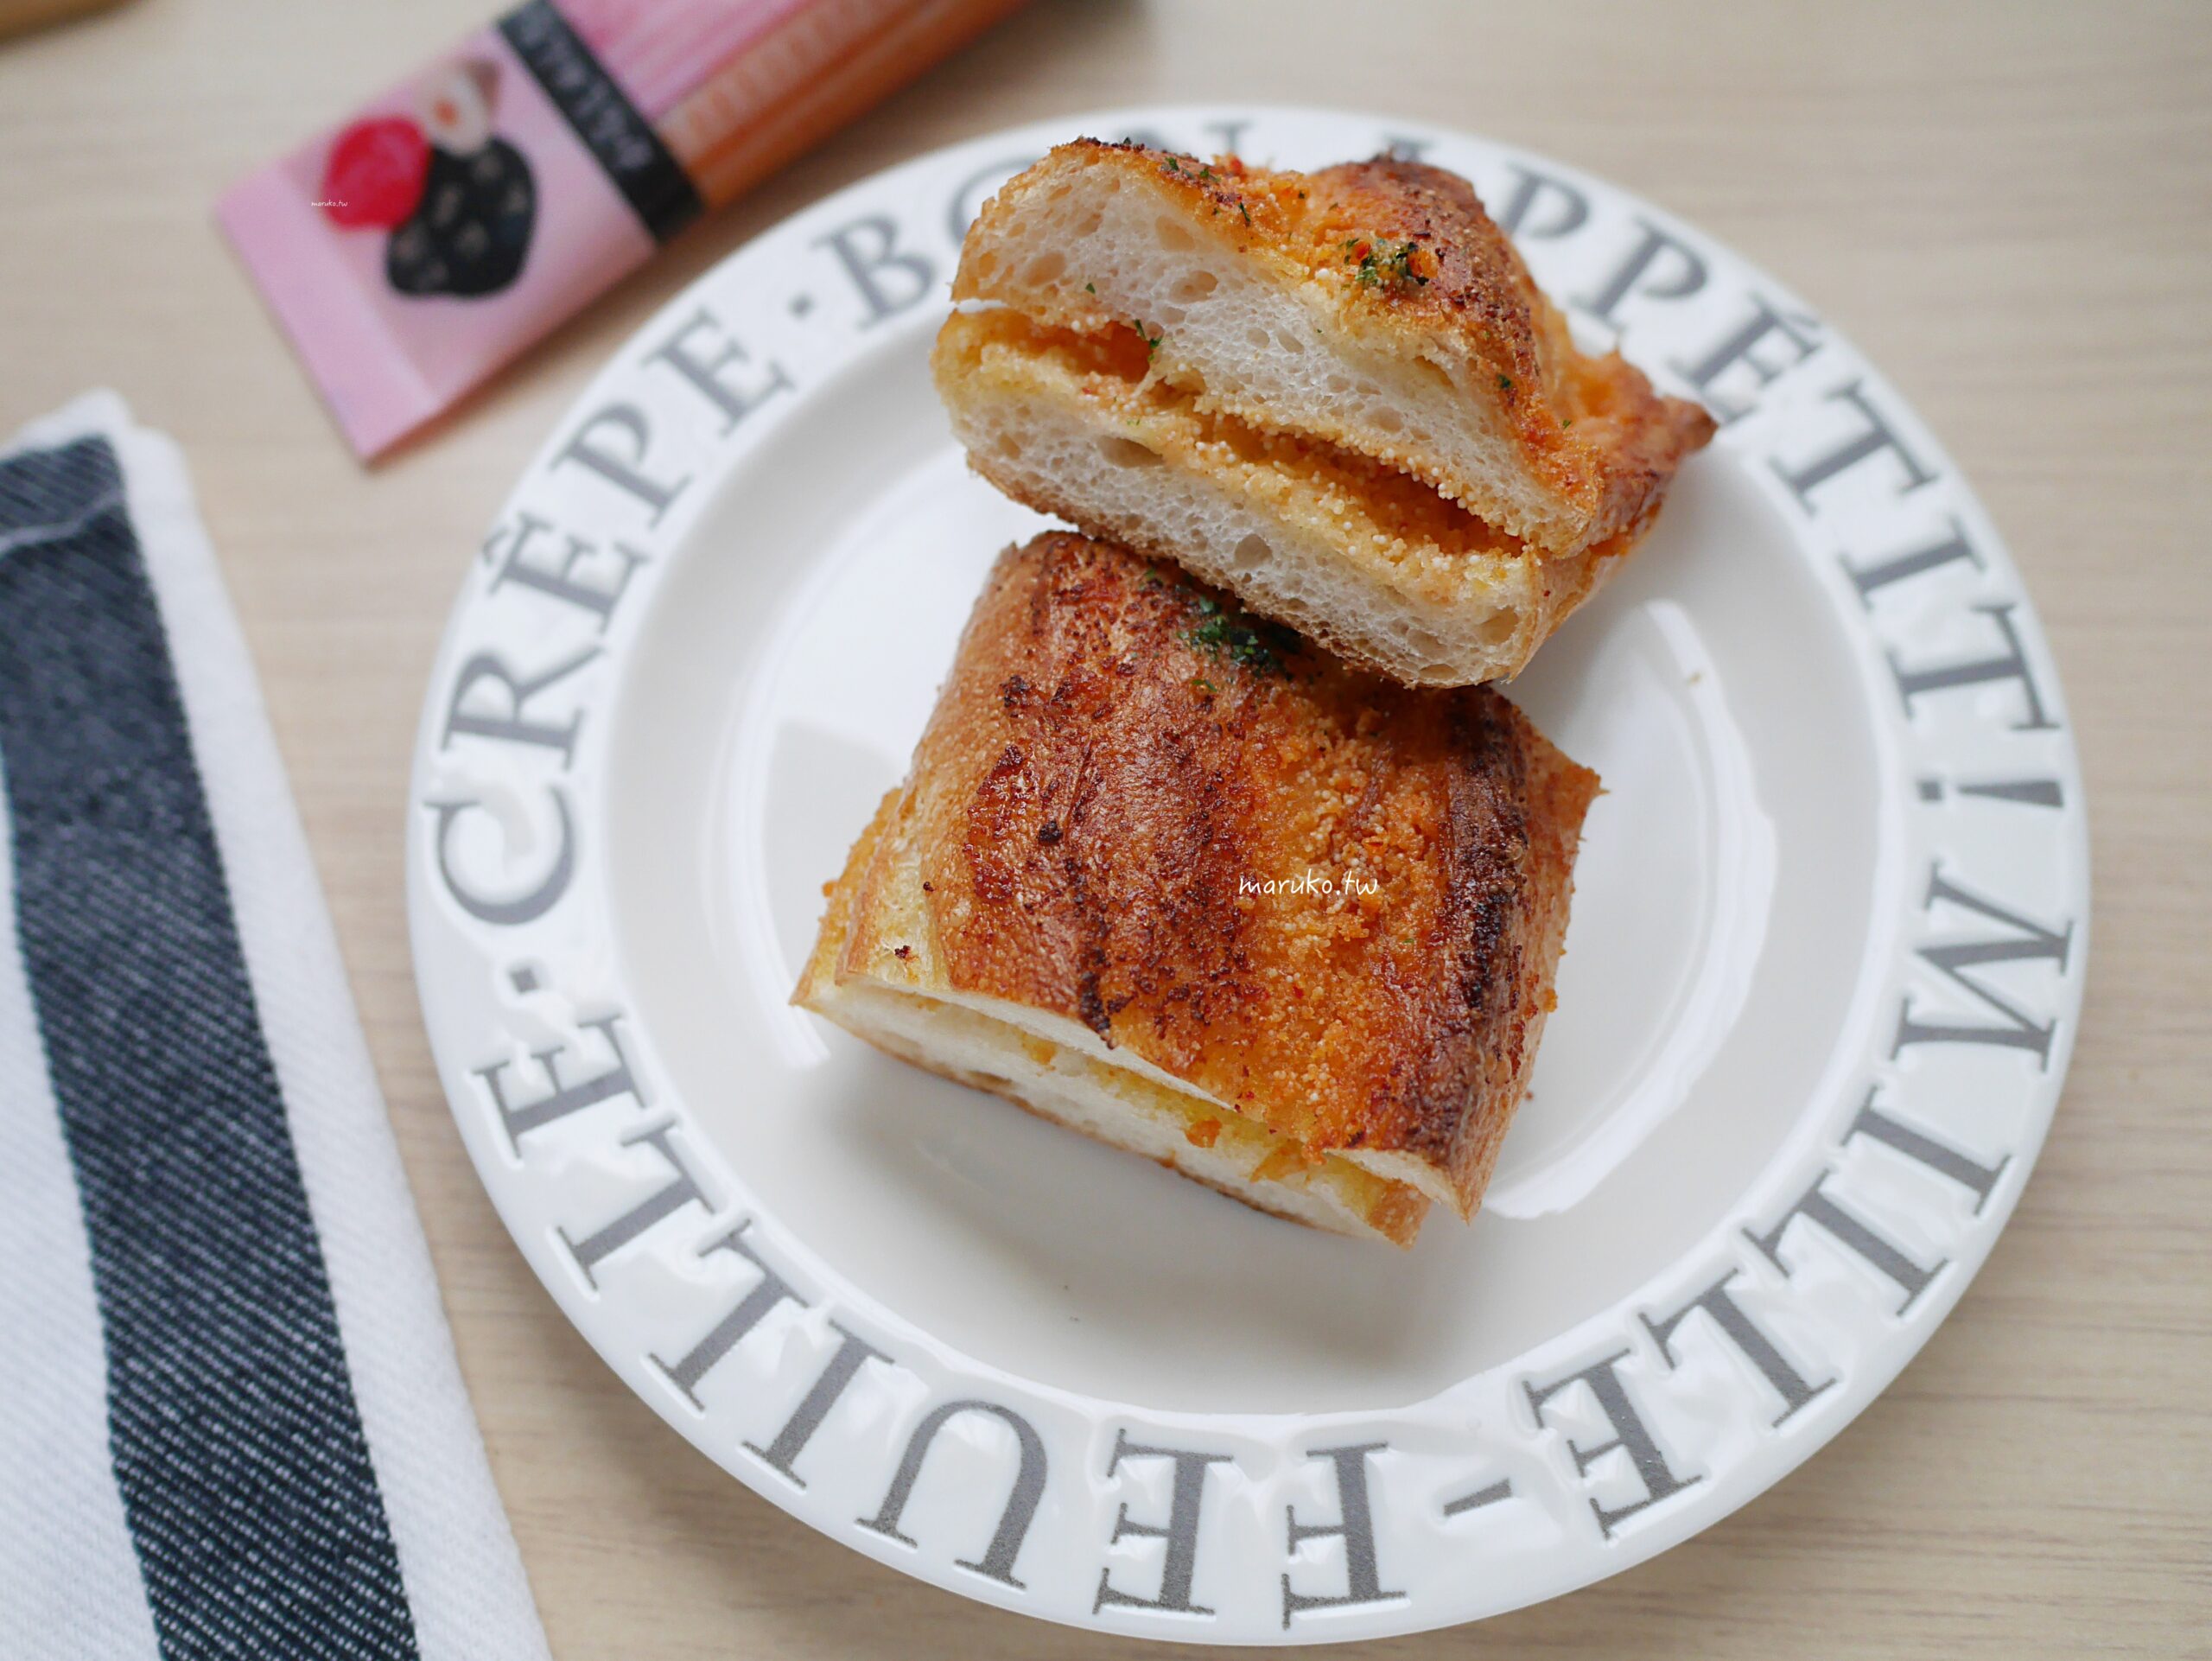 【食譜】明太子法國麵包 二樣食材就能做日本麵包店最受歡迎的西式麵包！ @Maruko與美食有個約會